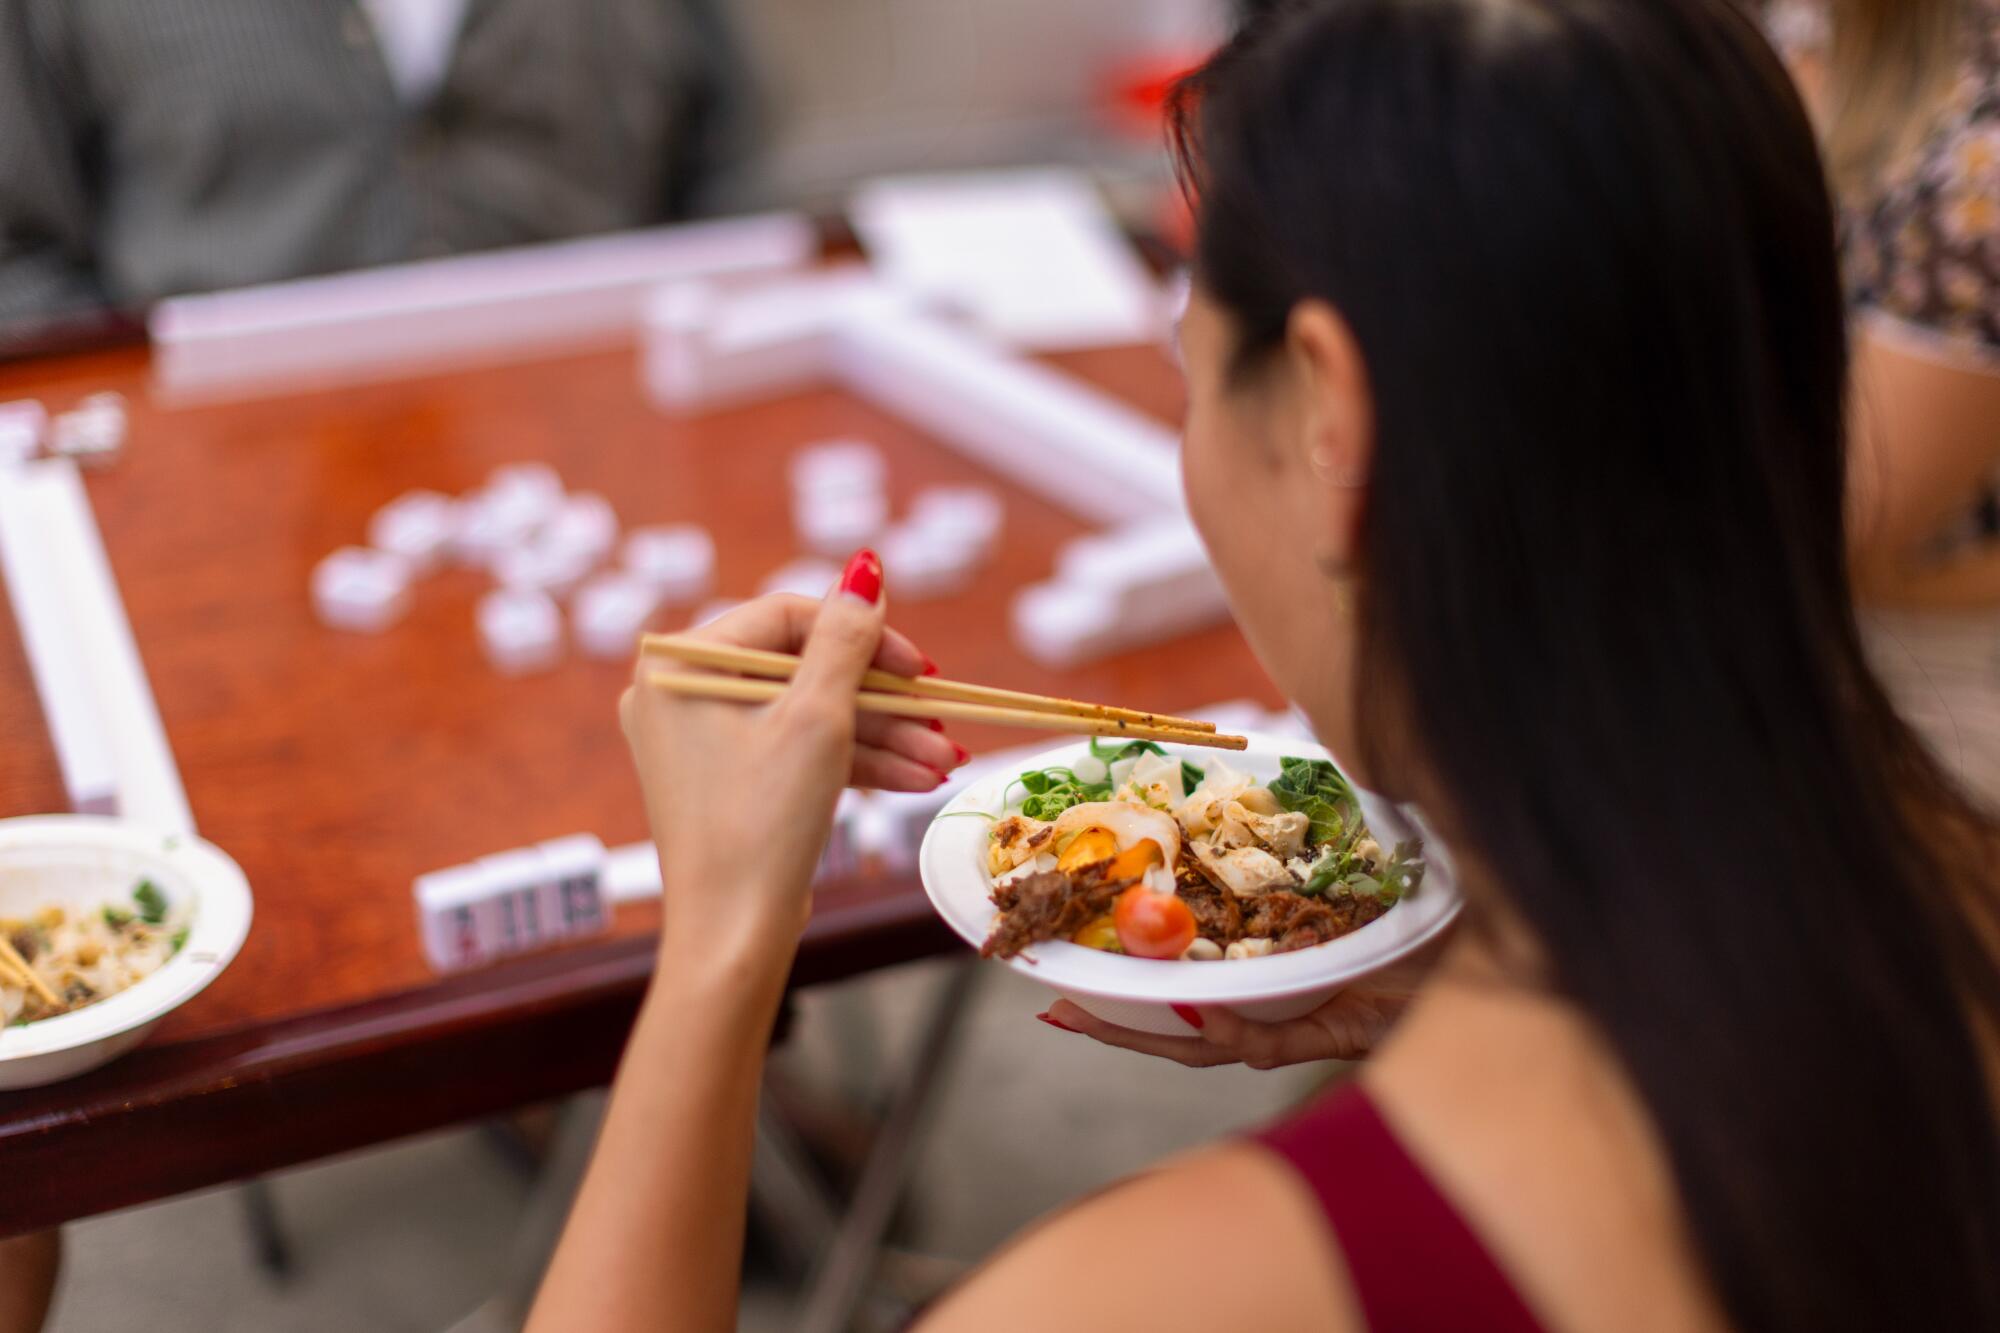 Una mujer come con palillos mientras está sentada en una mesa de mah-jongg.